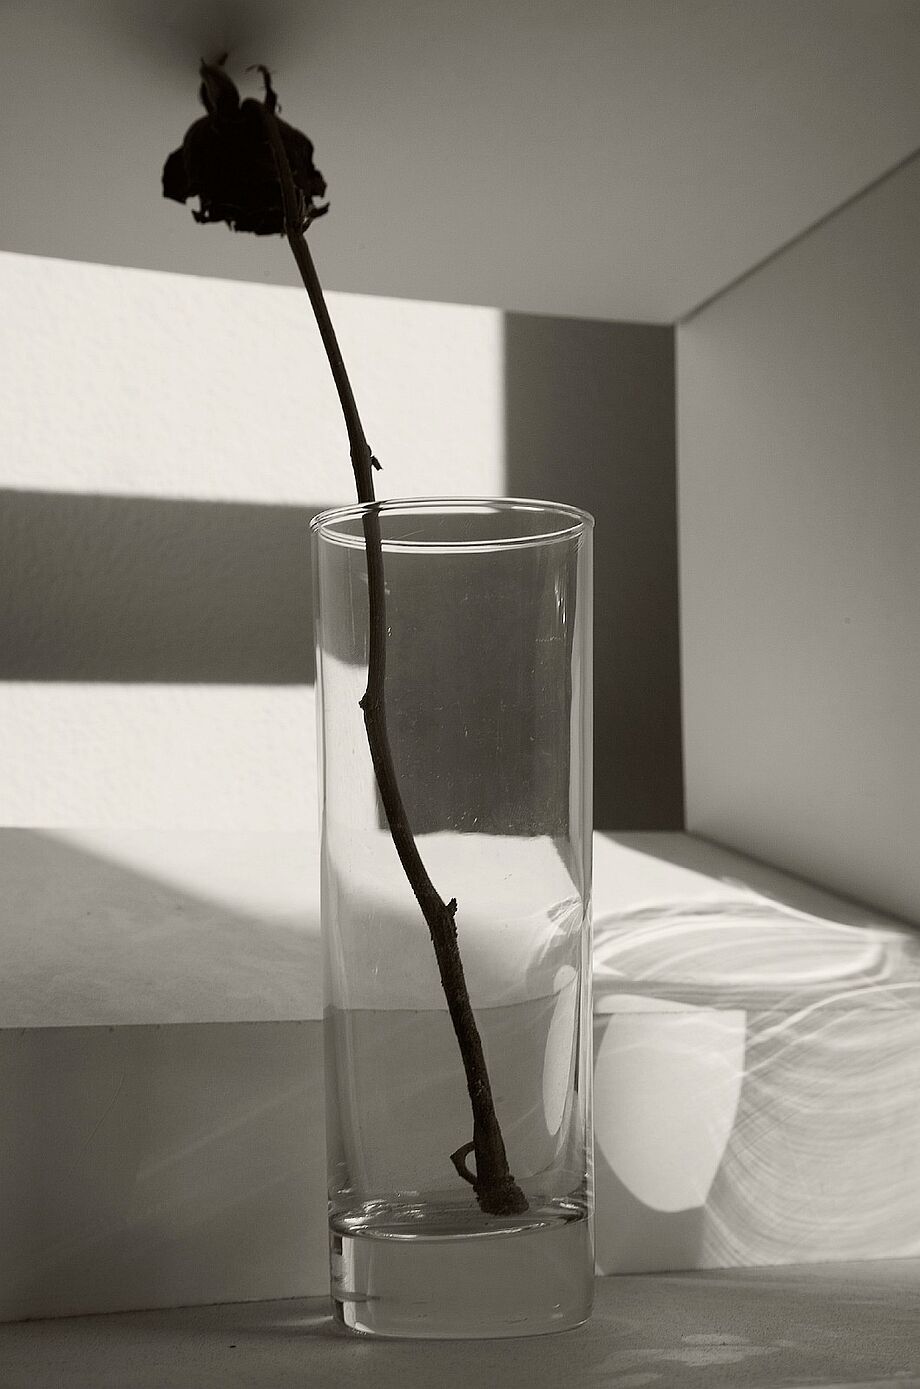 Das Bild zeigt eine Blume in einer transparenten Vase. Sie steht sehr beengten Raum. Im Hintergrund ist ein Bett zu erkennen.